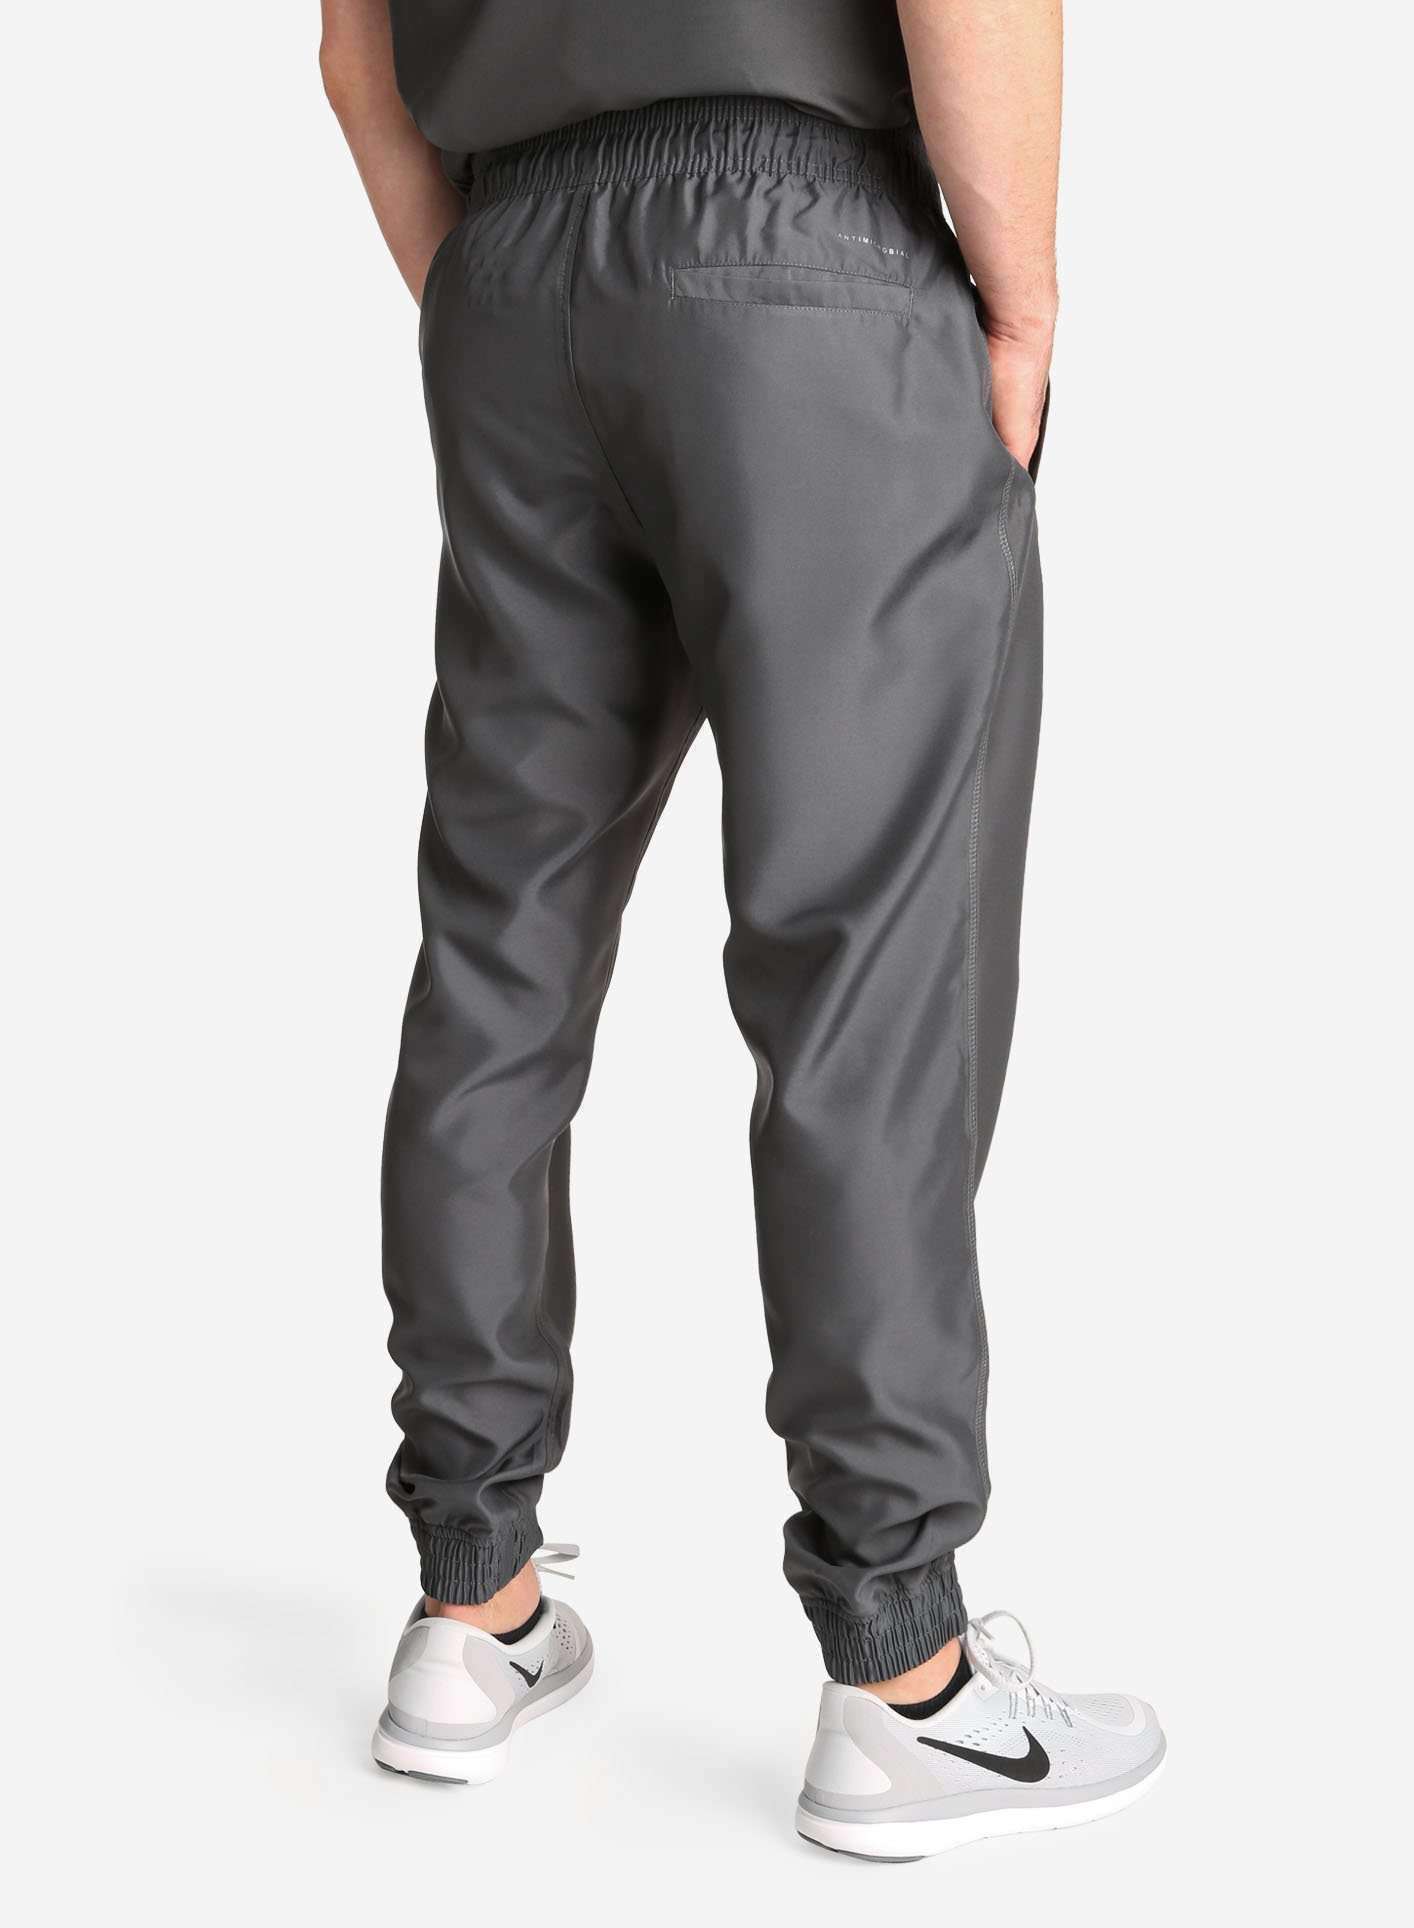 Men's Jogger Scrub Pants in Dark gray